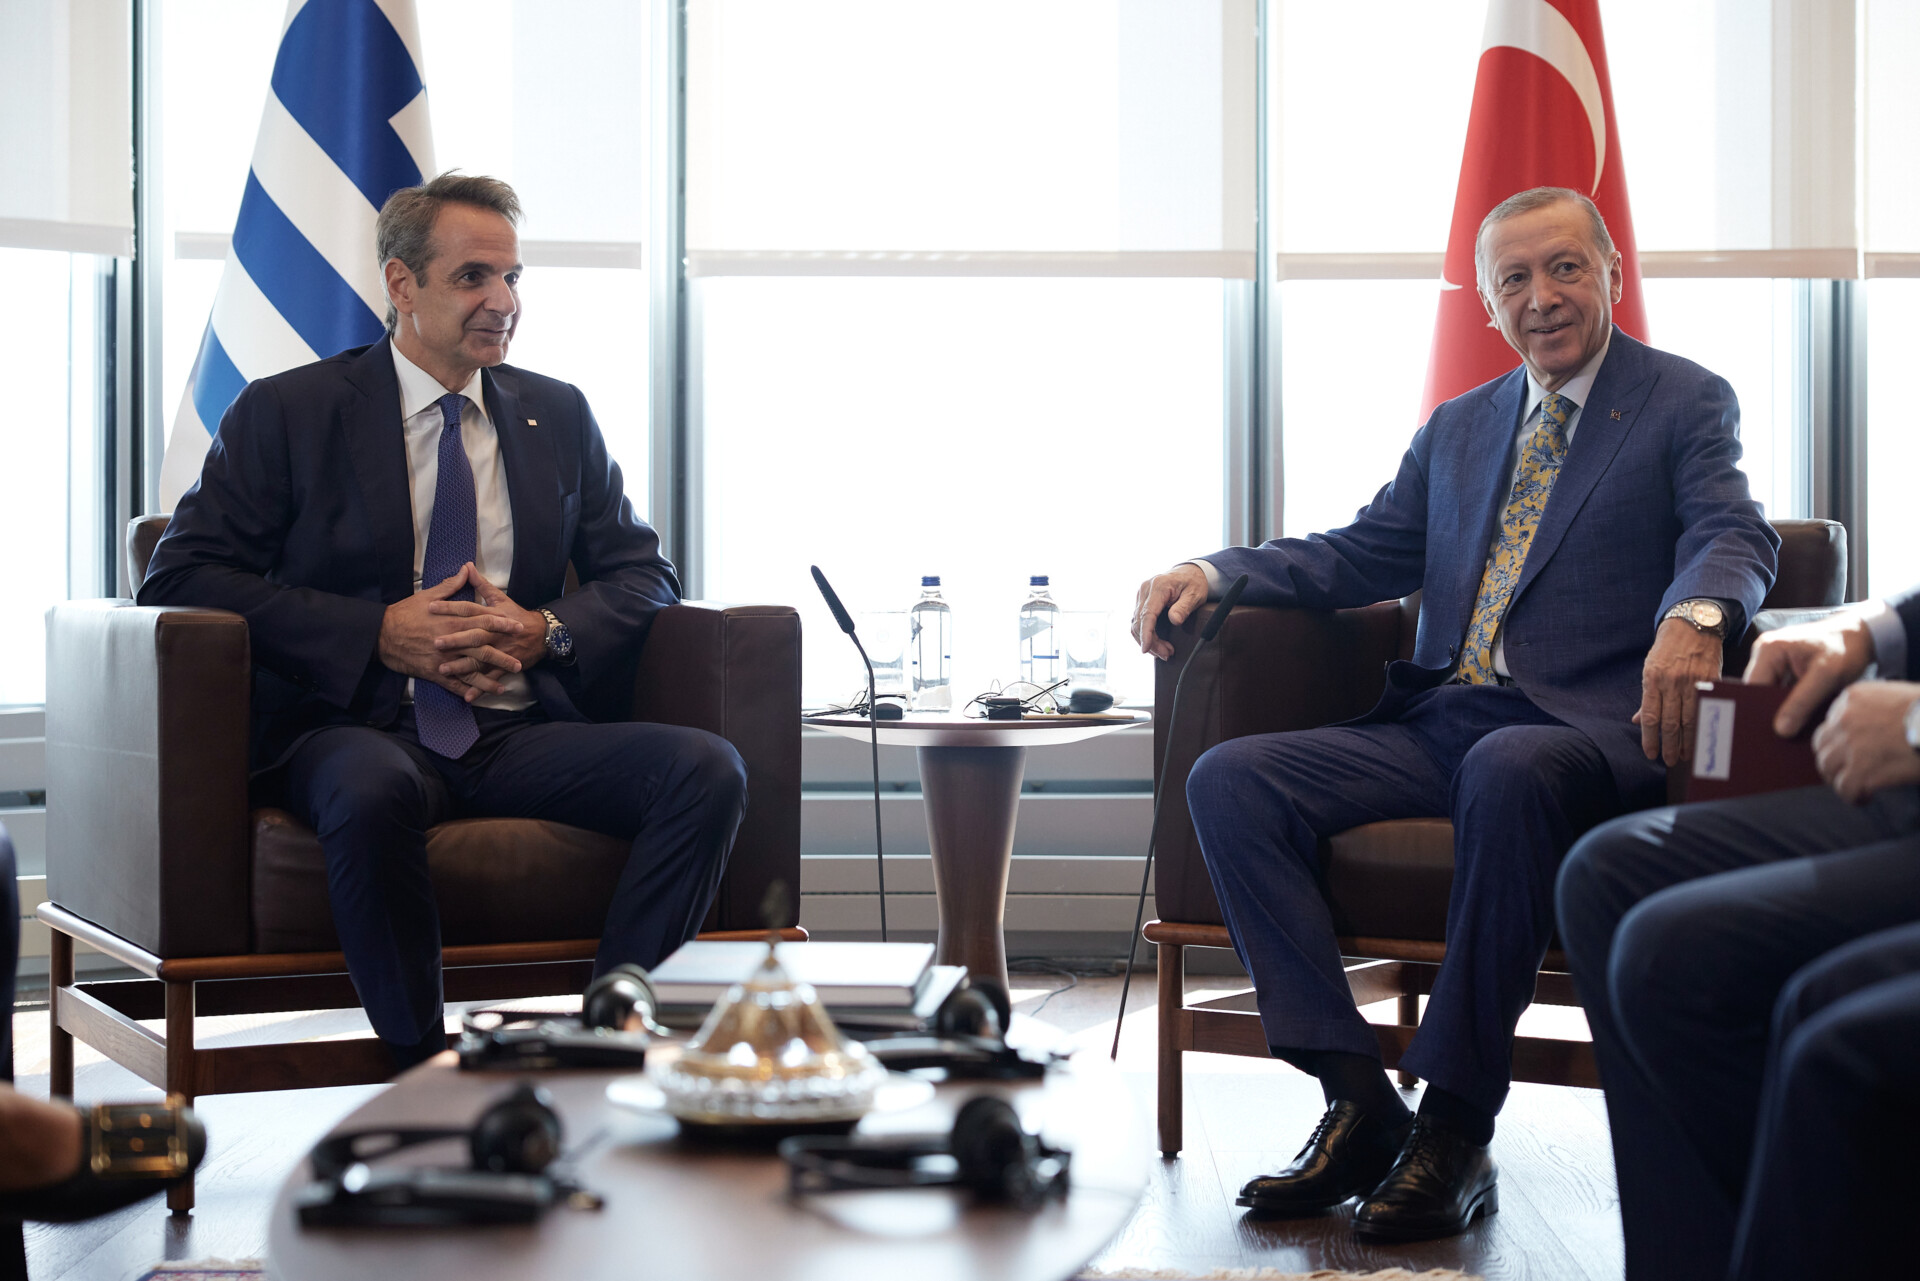 Συνάντηση του Πρωθυπουργού Κυριάκου Μητσοτάκη με τον Πρόεδρο της Τουρκίας Ρετζέπ Ταγίπ Ερντογάν στα πλαίσια της Γενικής Συνέλευσης του ΟΗΕ. © Γραφείο Τύπου Πρωθυπουργού